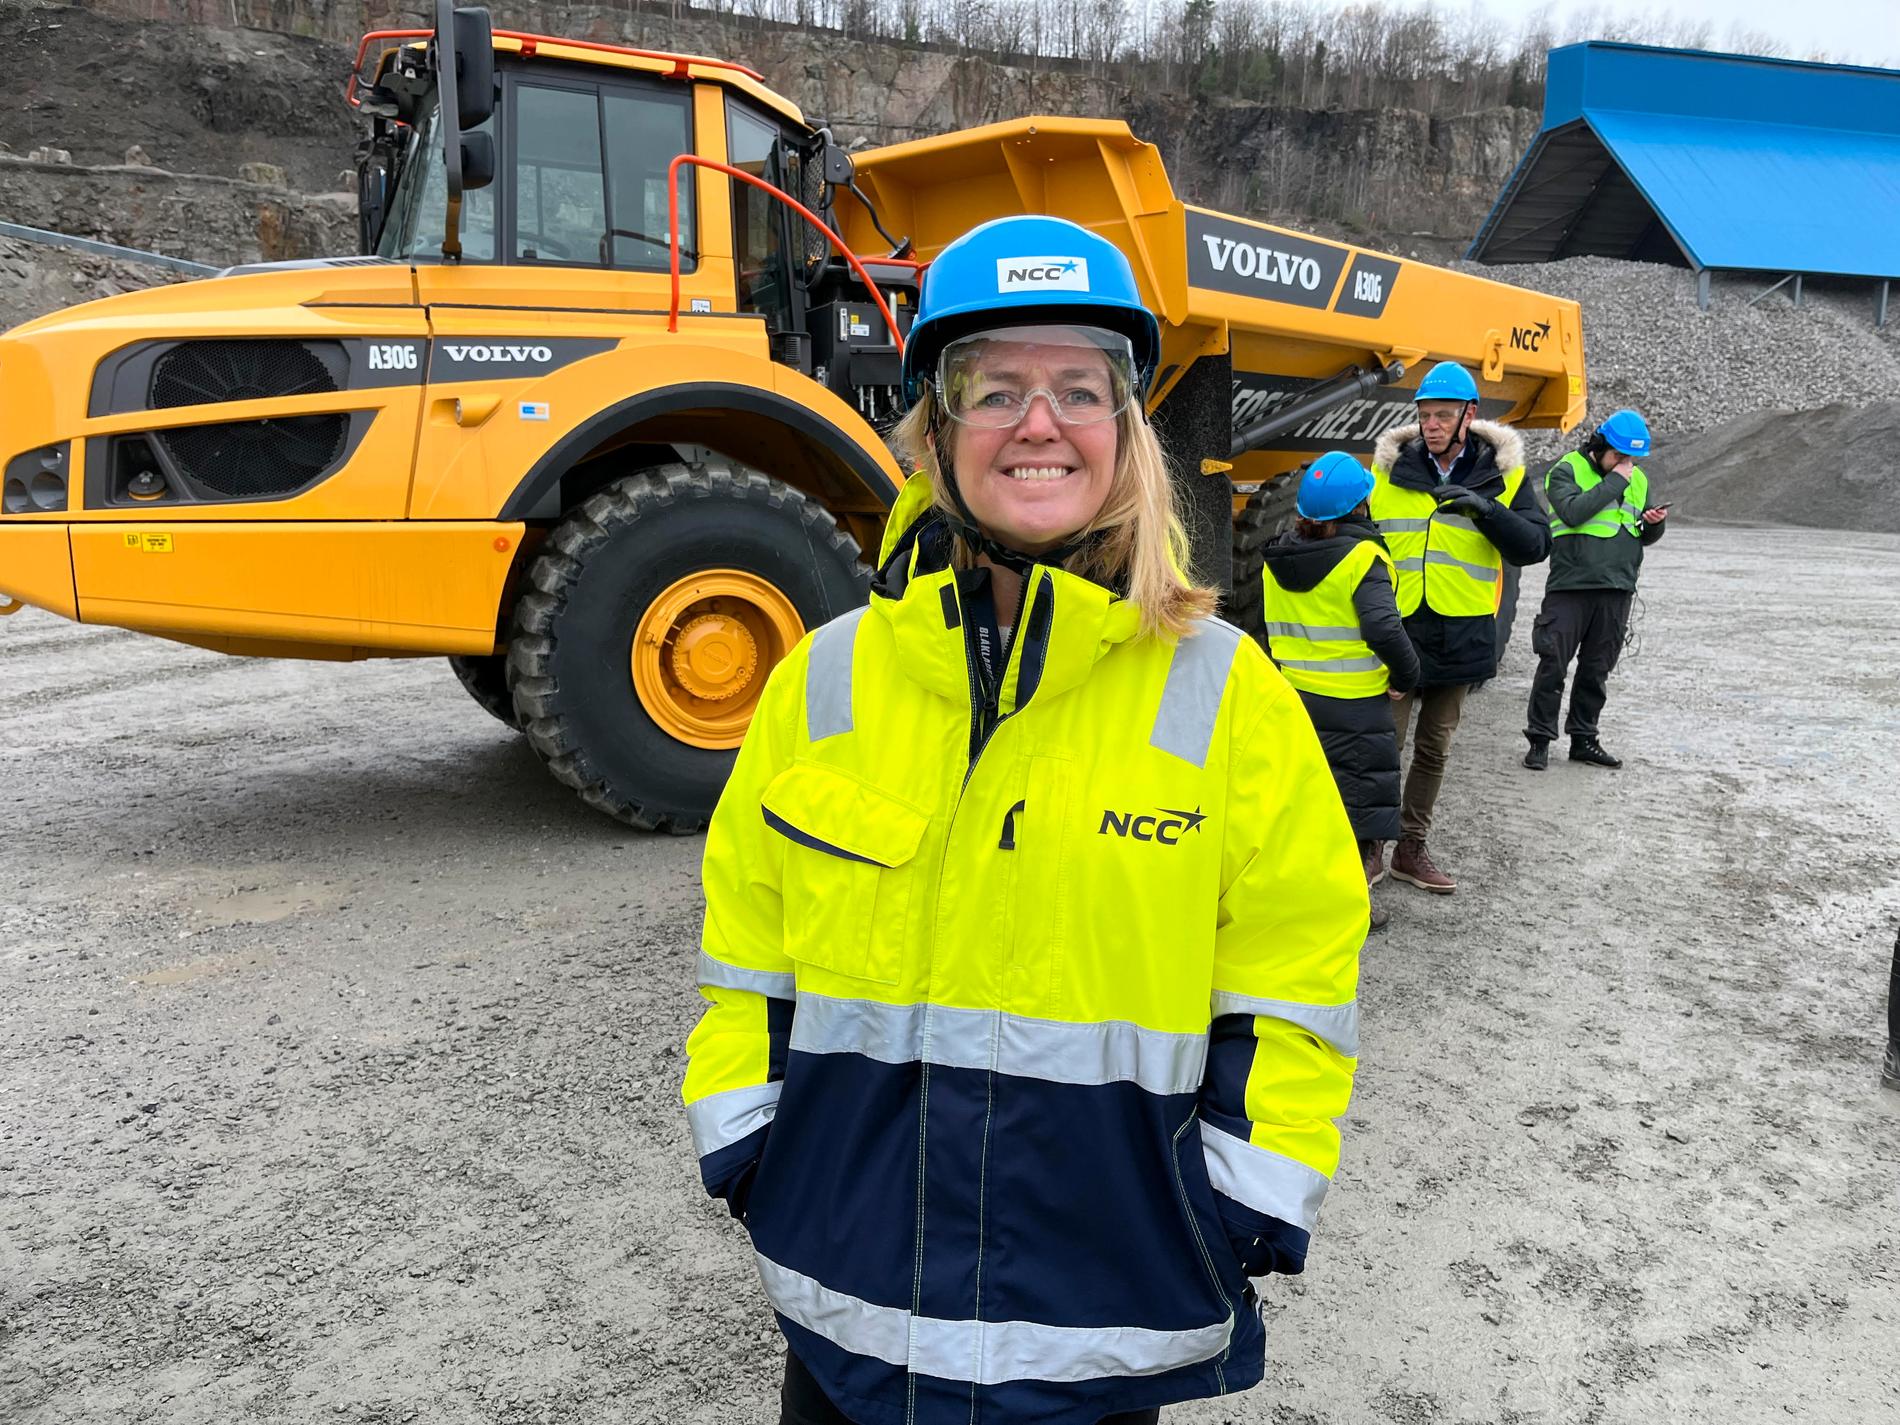 Grete Aspelund, affärsområdeschef på NCC, framför världens första fossilfria dumper i NCC:s bergtäkt i Södra Sandby utanför Lund.